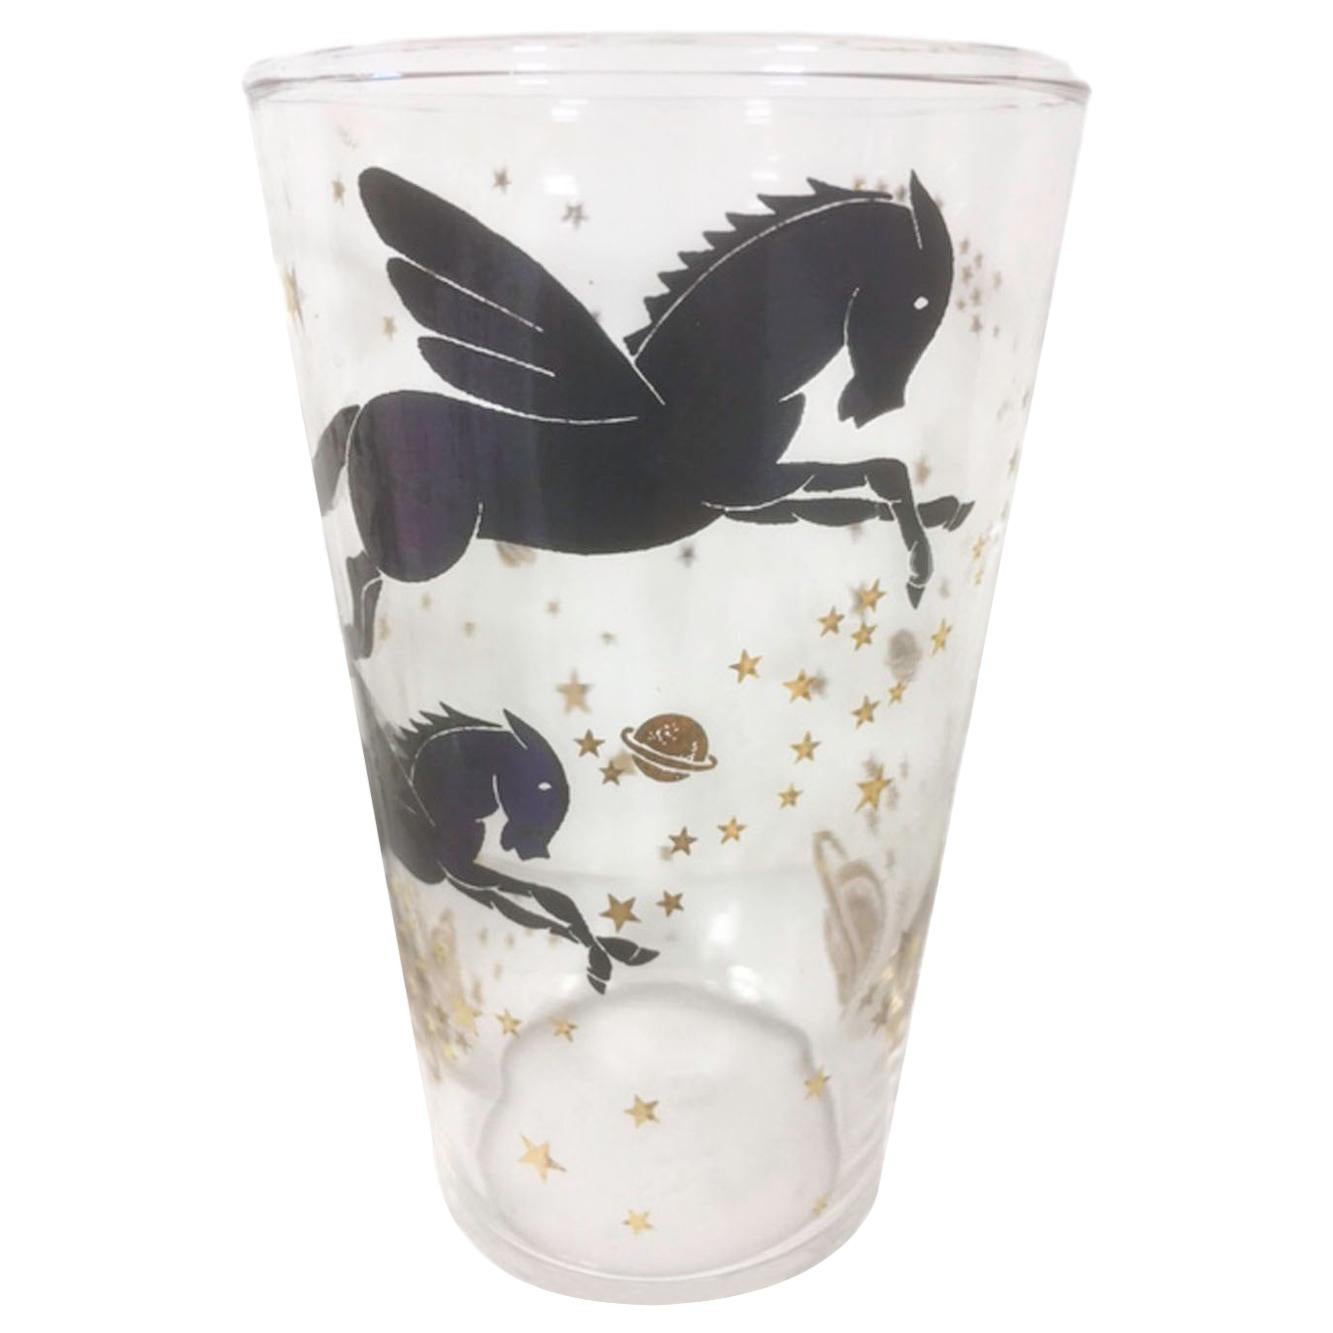 Vintage Federal-Gläser mit Pegasus unter Sternen und Planeten in Schwarz und Gold